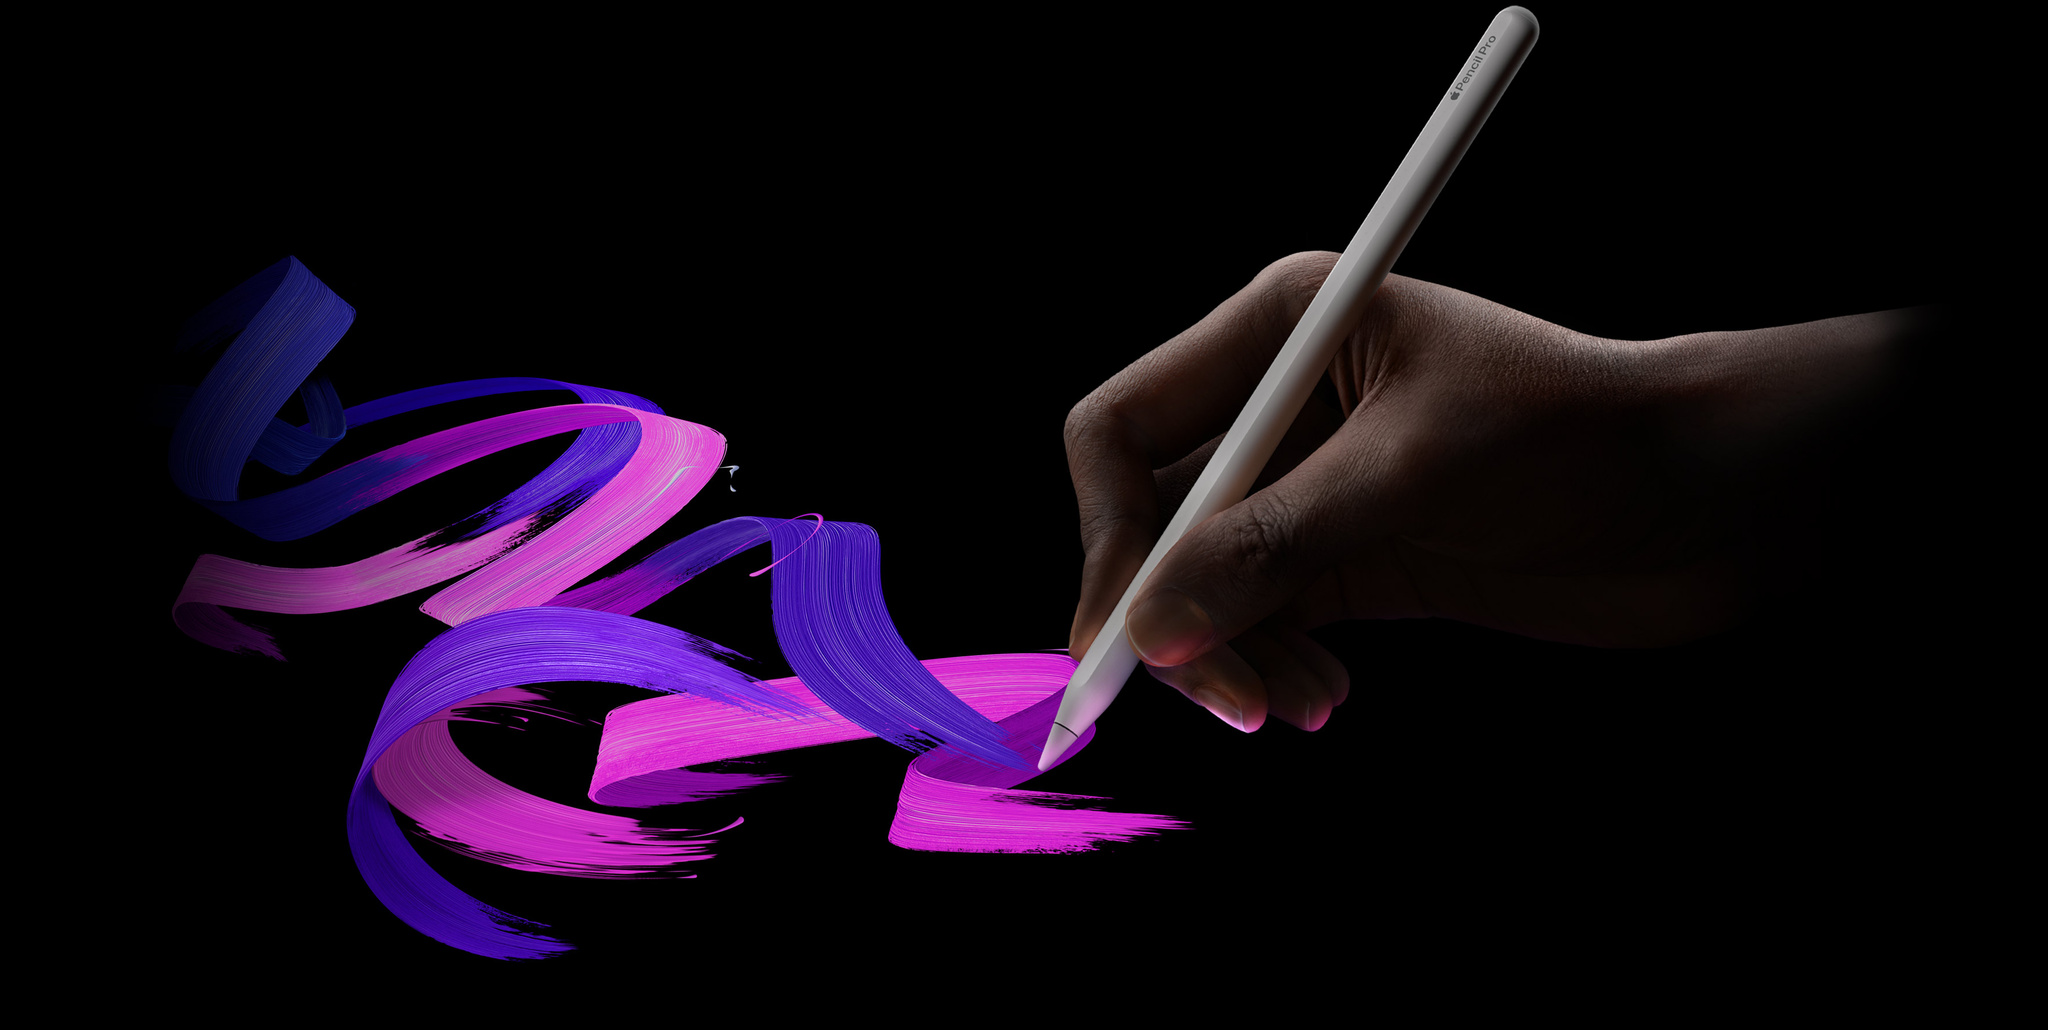 Apple Pencil Proを使い、手書きで作成されたピンクと紫色の曲線イラスト。